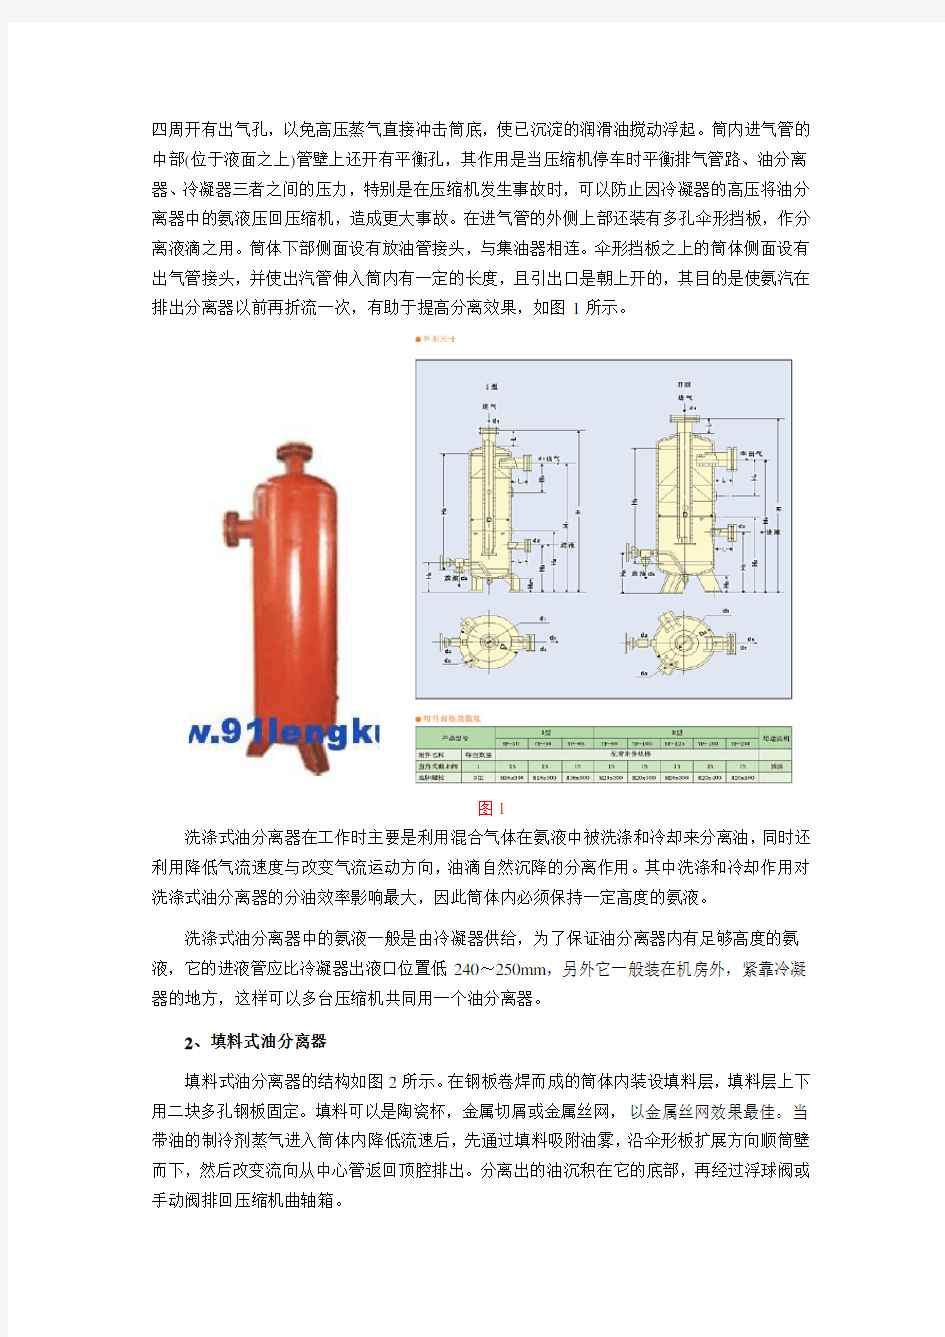 制冷系统中油分离器结构及工作原理